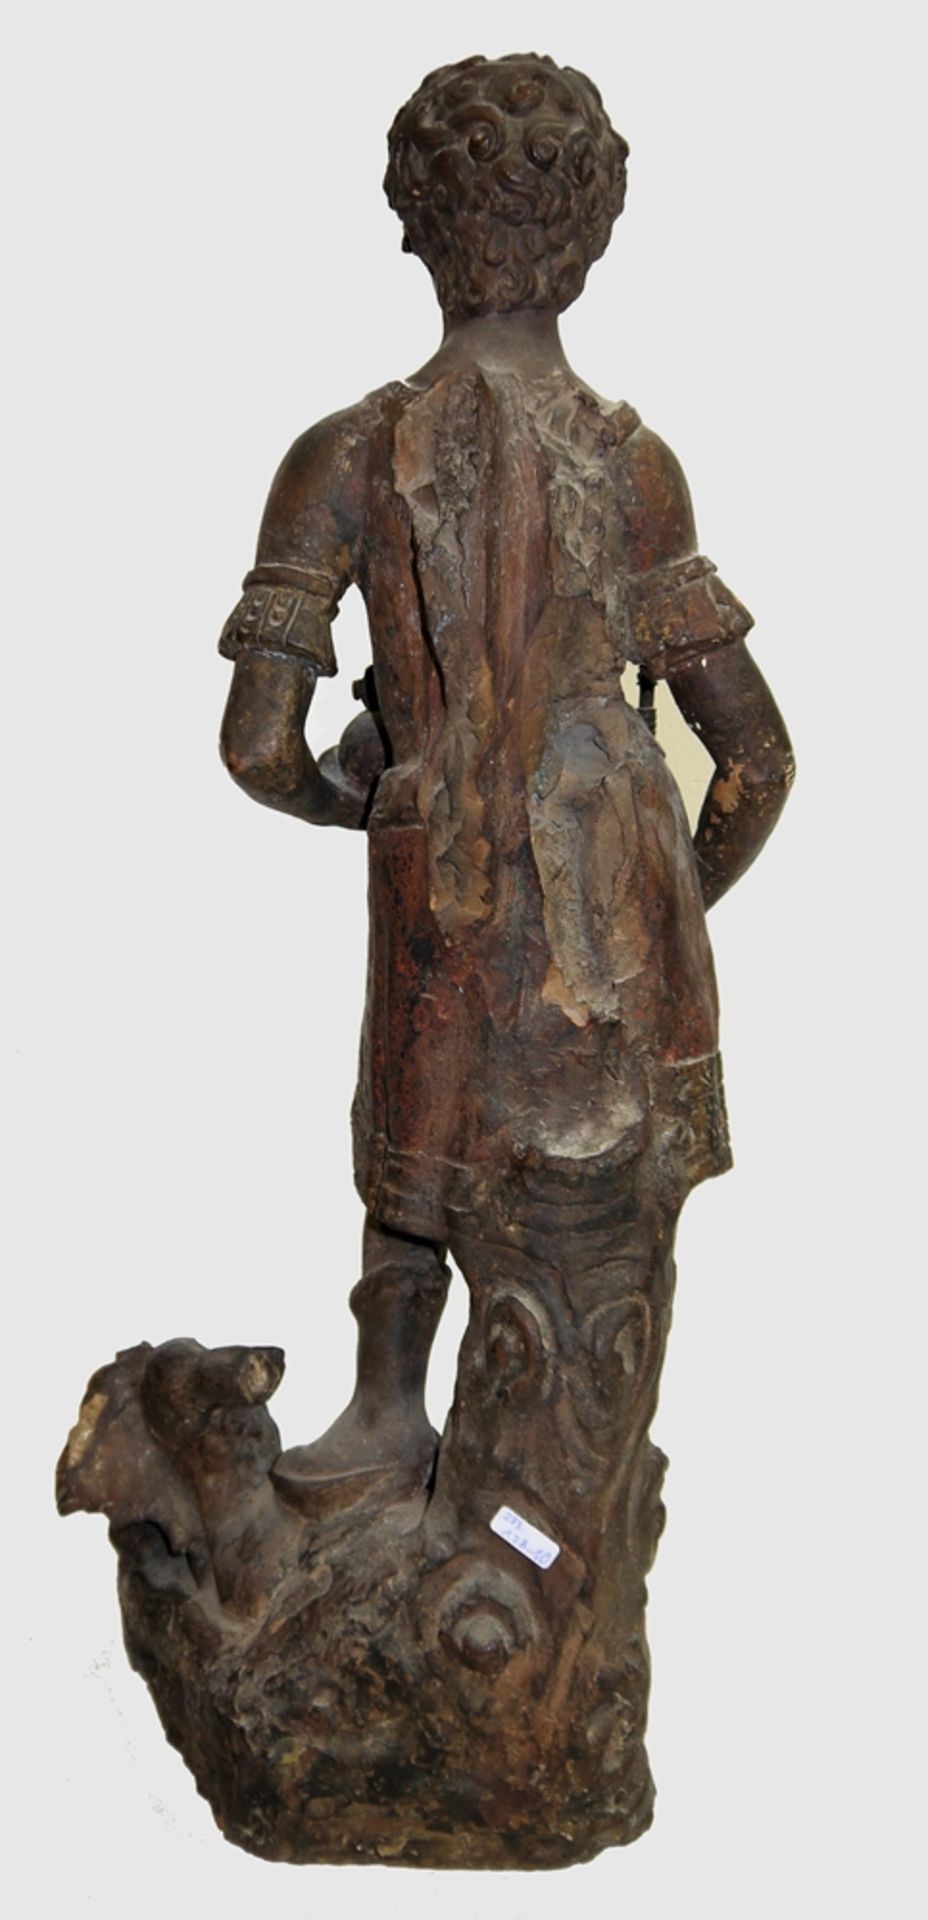 Anonym, Norditalien um 1600, Erzengel Michael auf dem besiegten Teufel stehend, große Terracotta- - Bild 4 aus 4